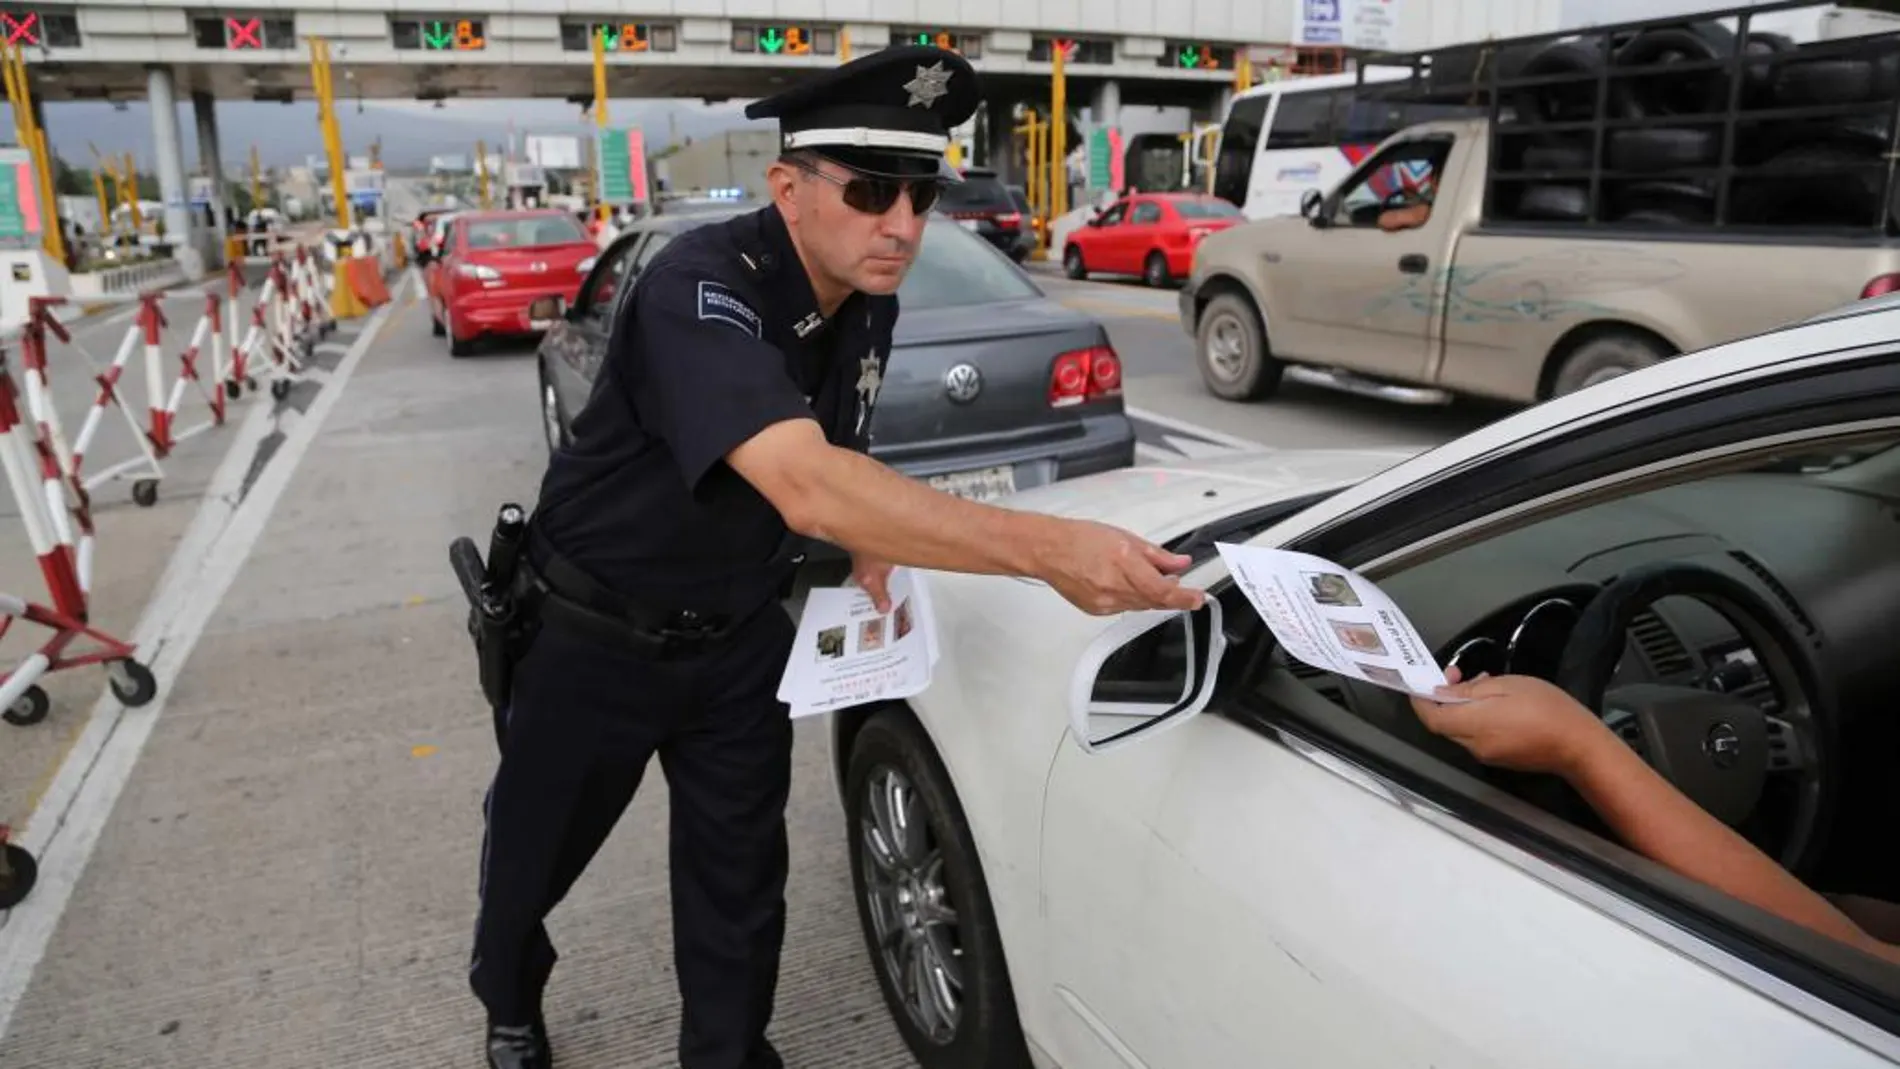 Fotografía cedida por la Policía Federal que muestra a un policía mientras distribuye folletos a los conductores donde se anuncia la recompensa de 60 millones de pesos